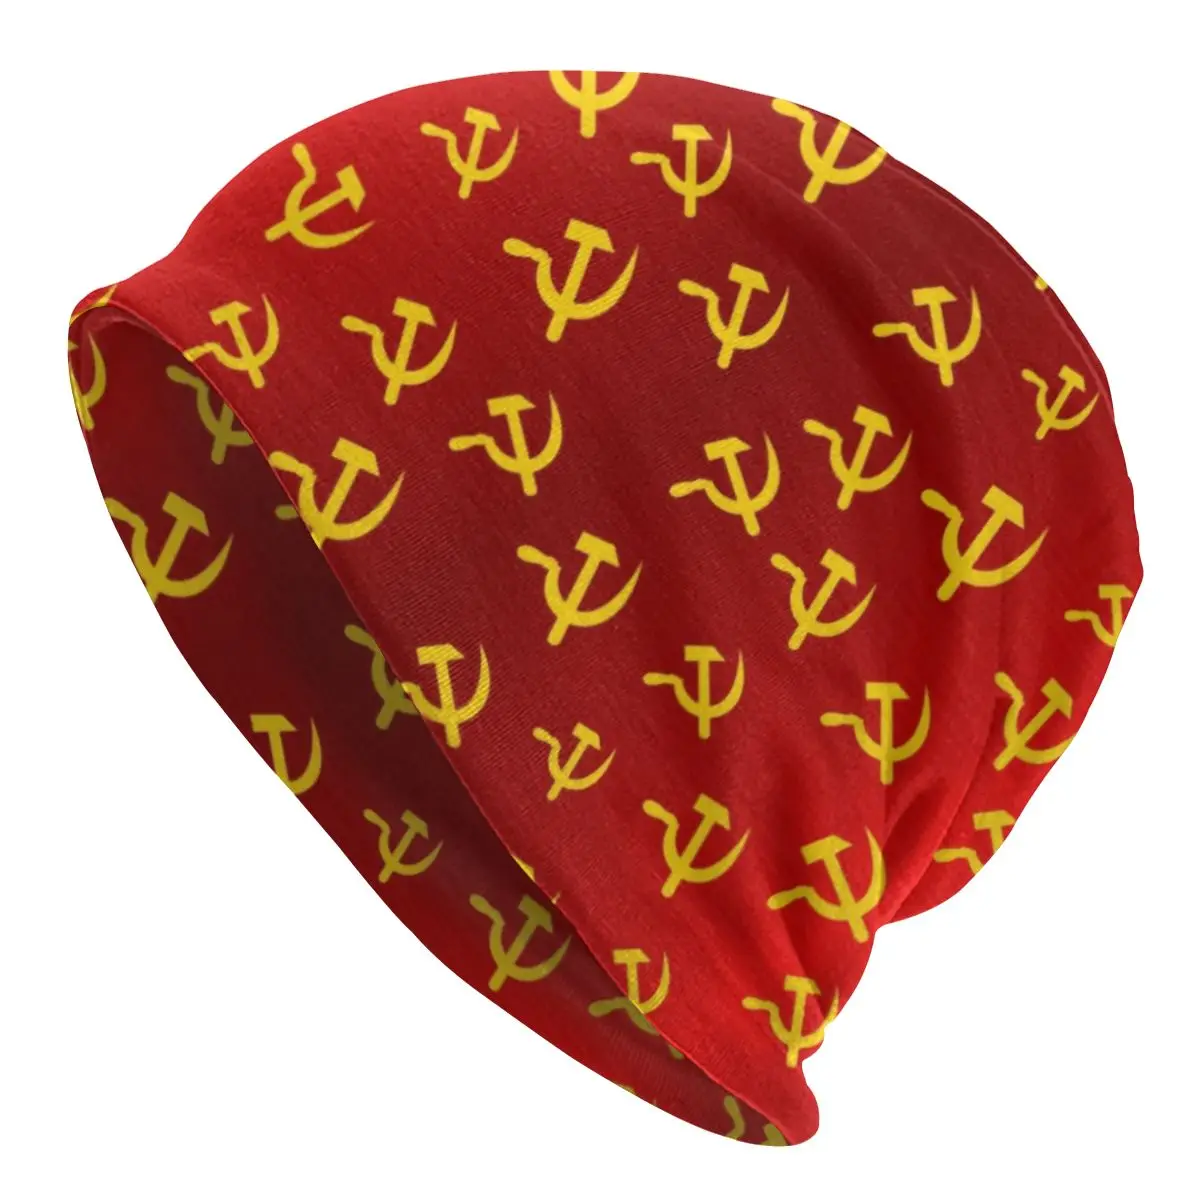 

Шапка-бини в стиле СССР для мужчин и женщин, теплая вязаная шапка в стиле социализма Советского Союза, унисекс, Зимняя